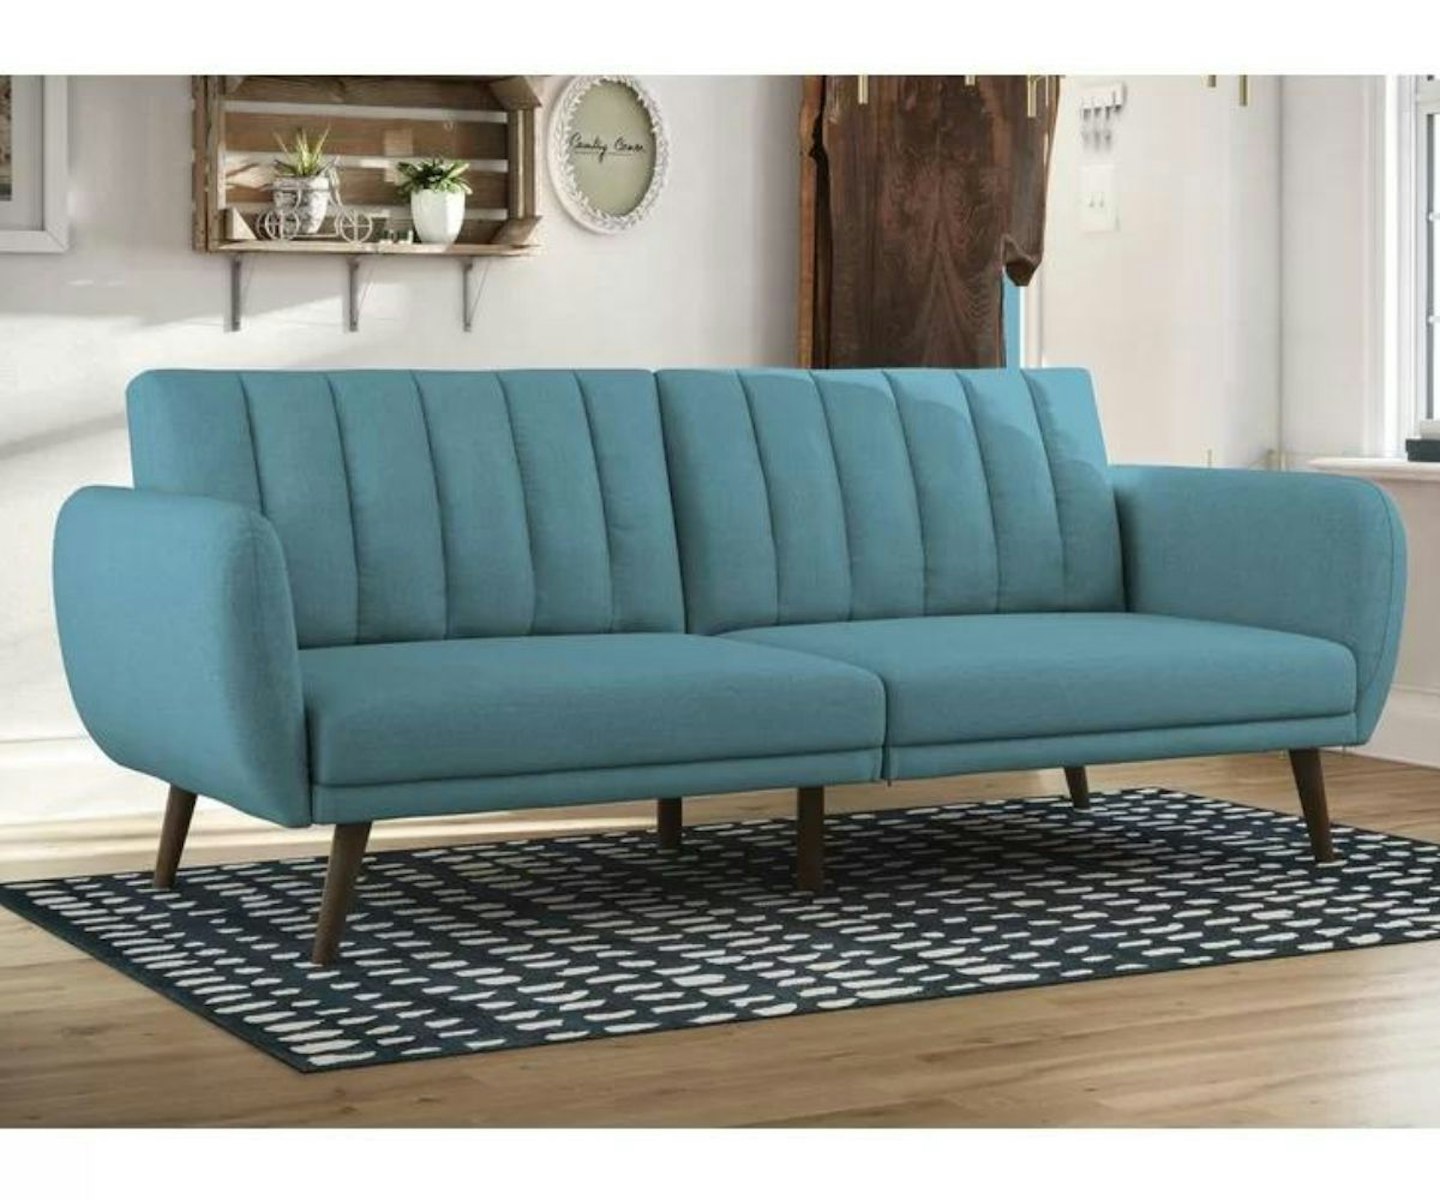 Ferraro 3 Seater Upholstered Sofa Bed